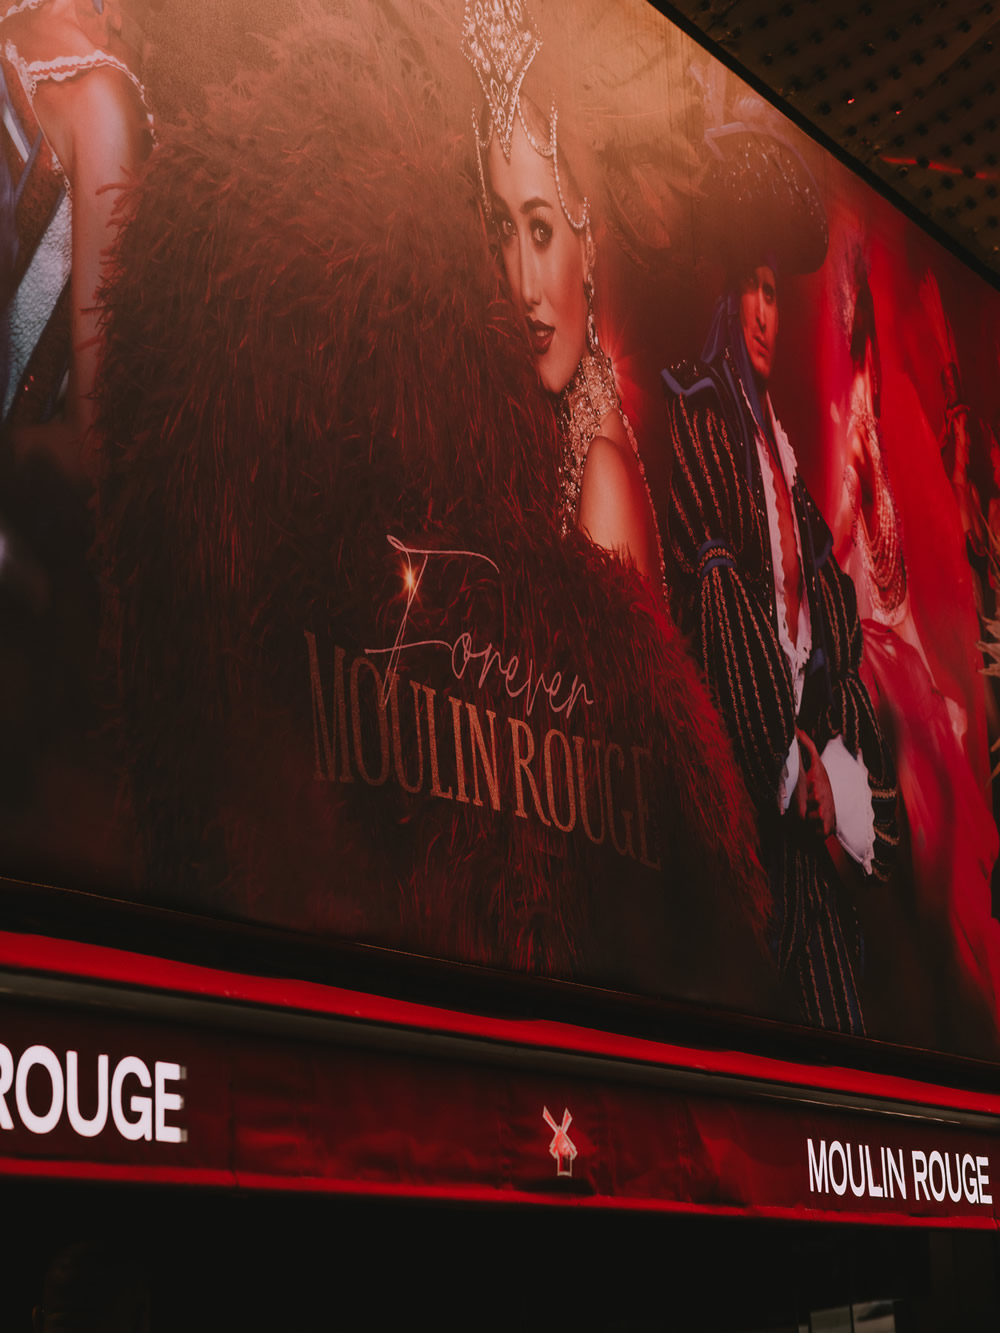 Moulin Rouge in Paris show